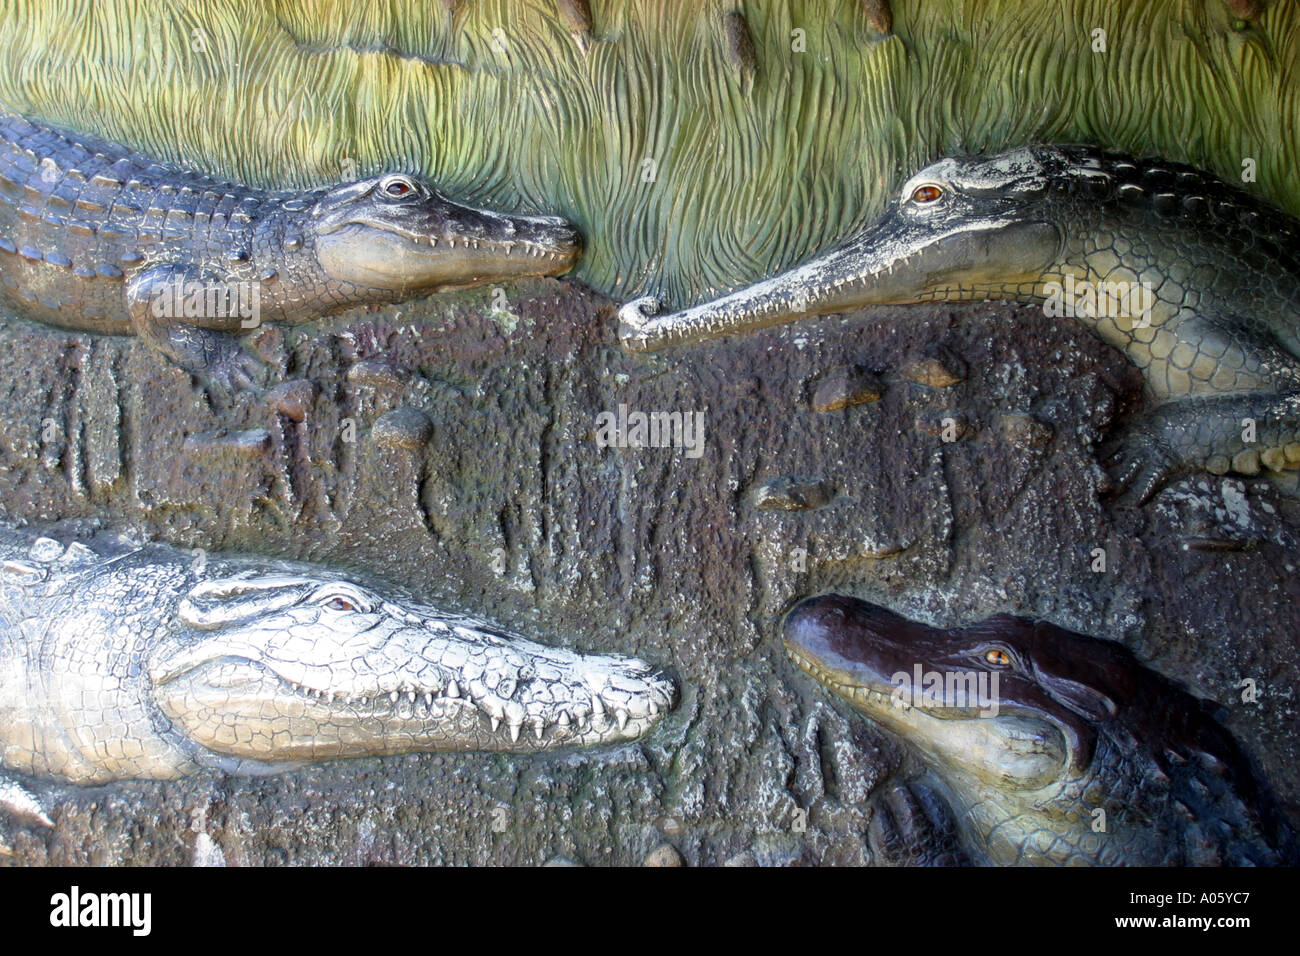 Bas-relief en bronze sculpture de la famille crocodile au Zoo de Taronga Sydney NSW Australie Banque D'Images